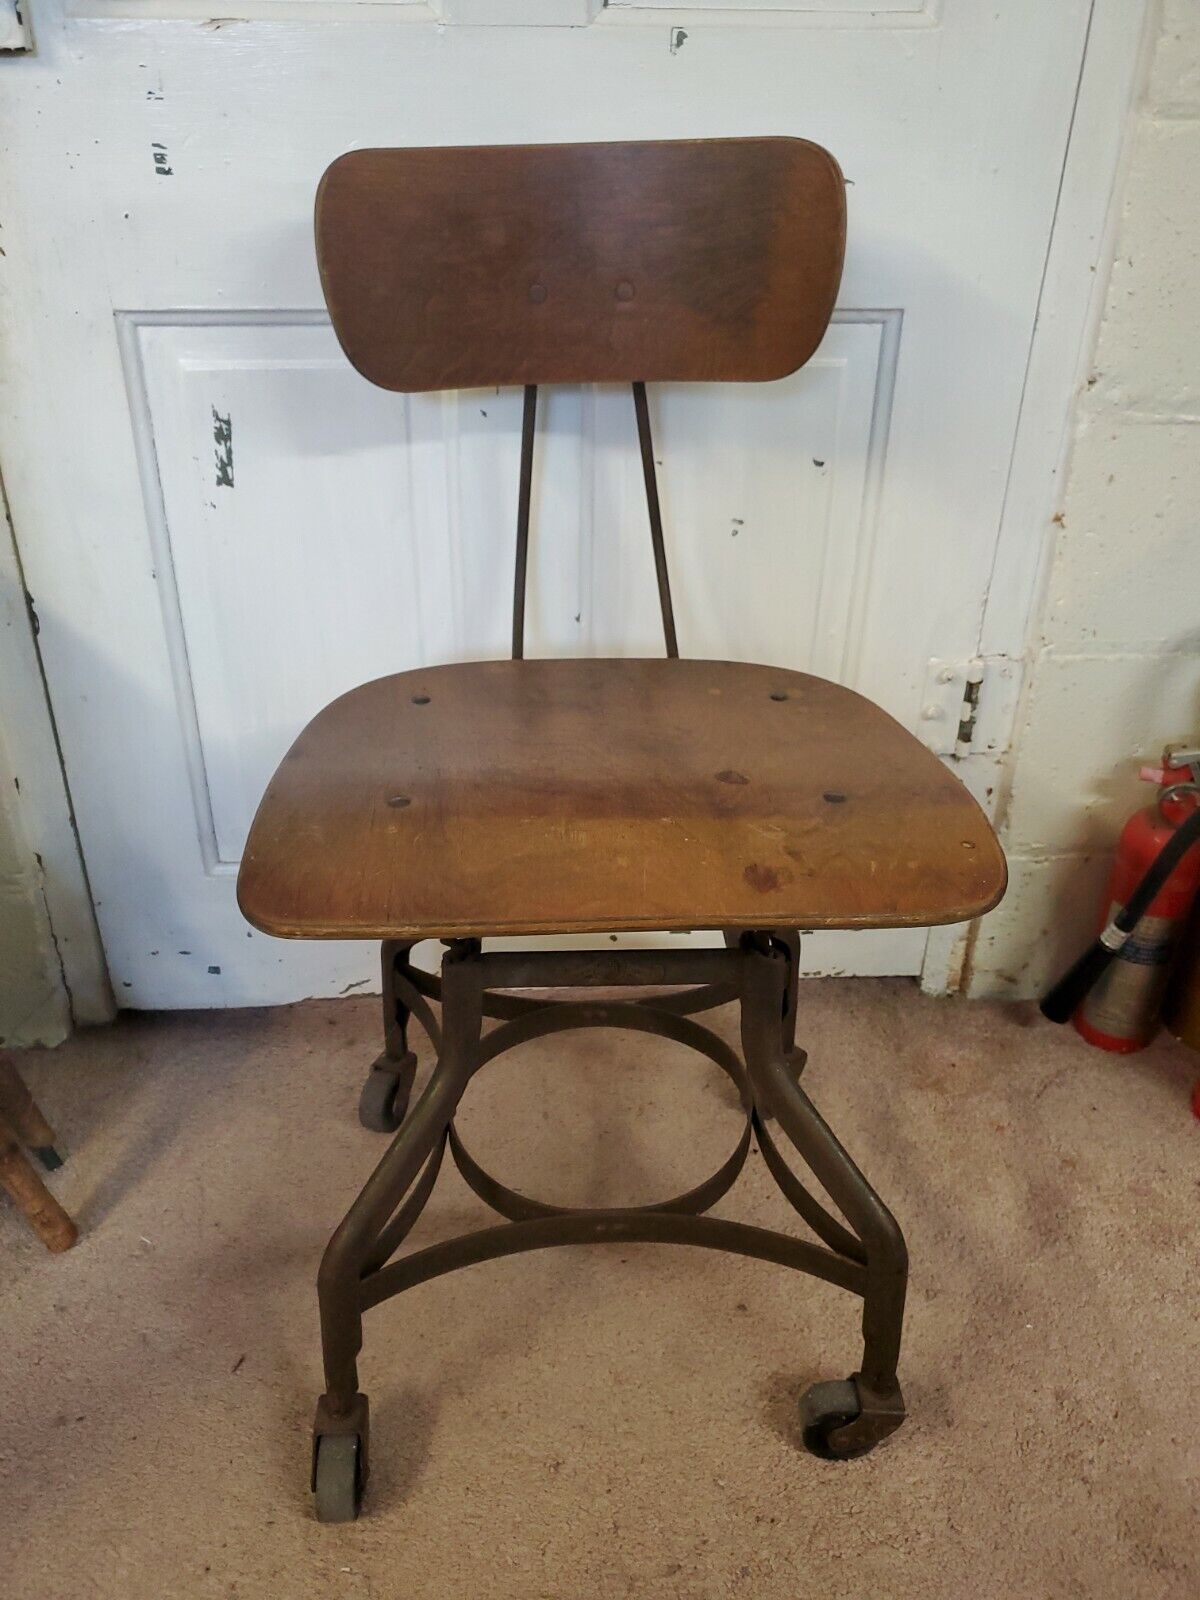 Vintage TOLEDO Industrial Drafting Stool/Chair Adjustable Swivel Wood & Metal